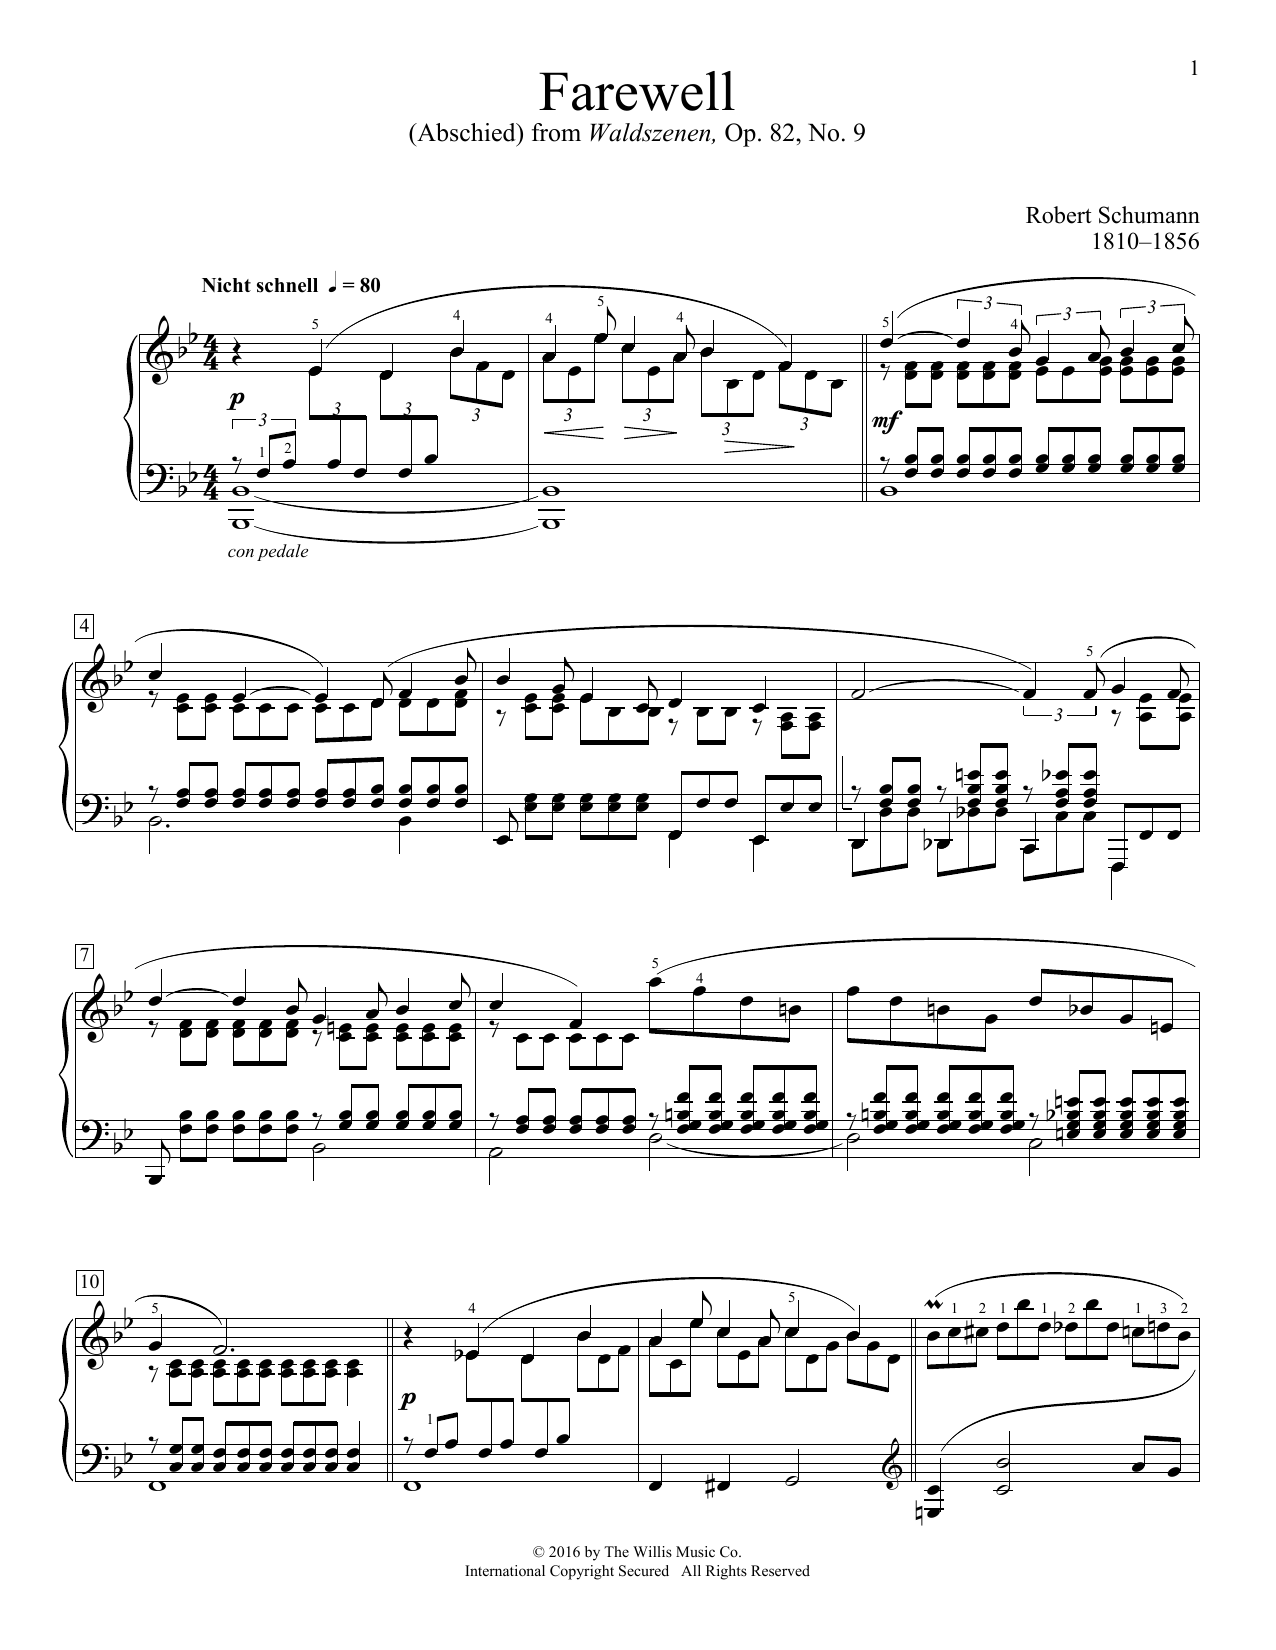 Download Robert Schumann Farewell (Abschied) Sheet Music